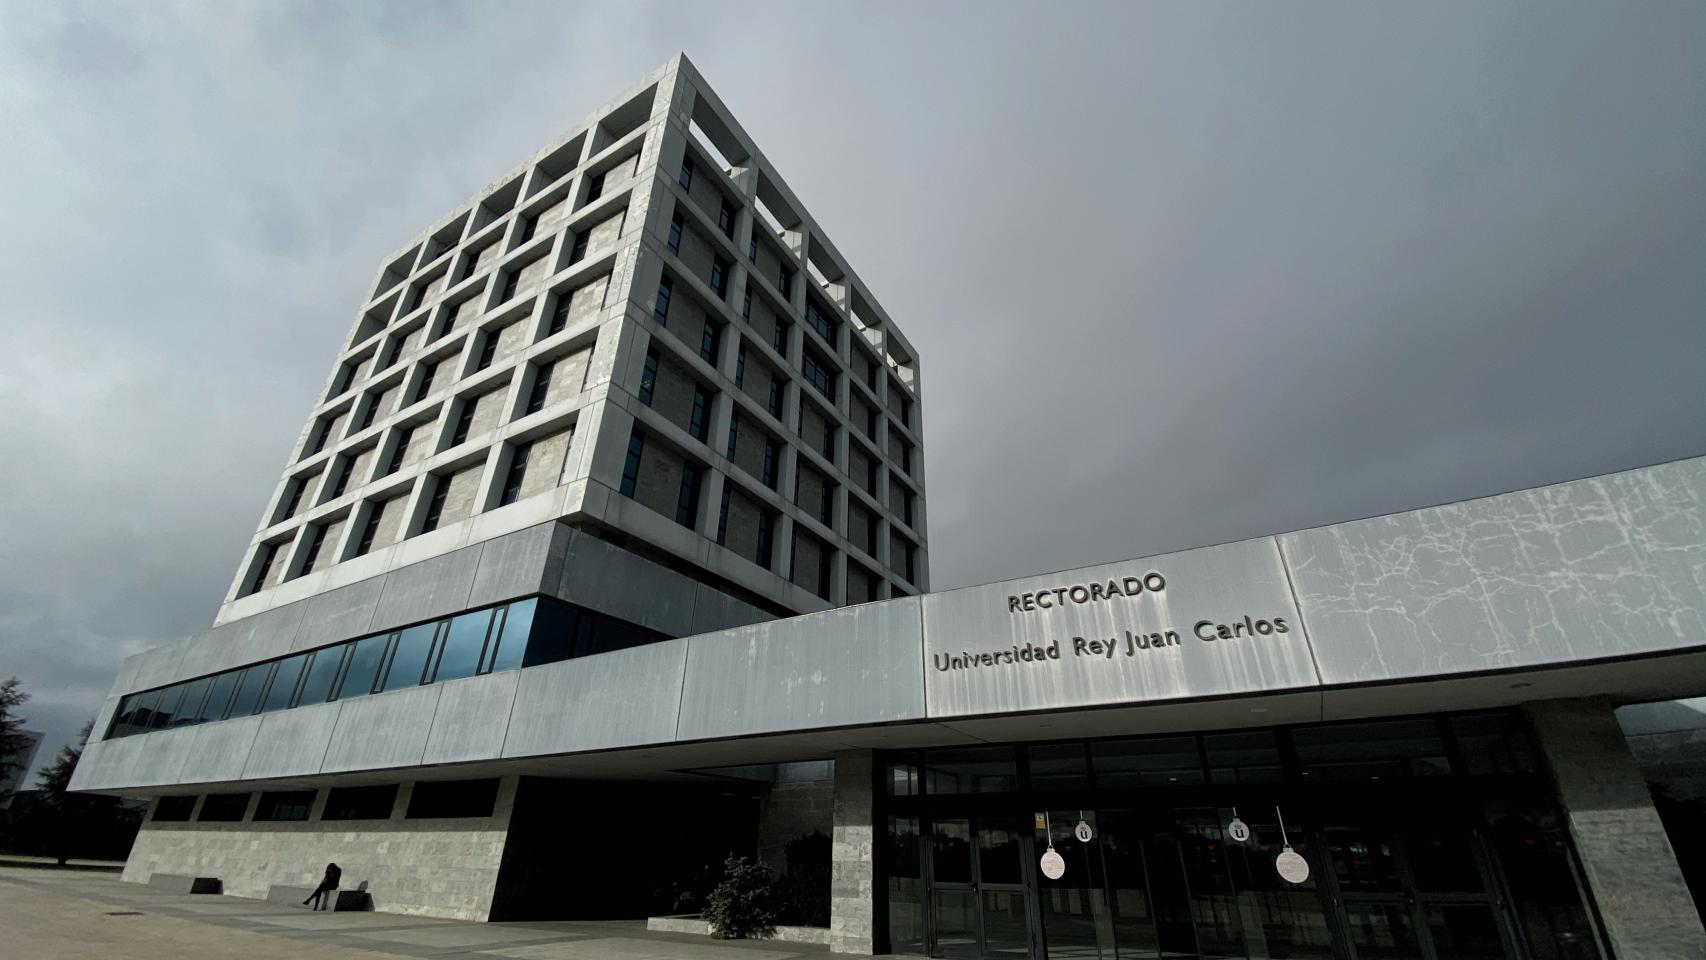 La fachada del rectorado de la Universidad Rey Juan Carlos.